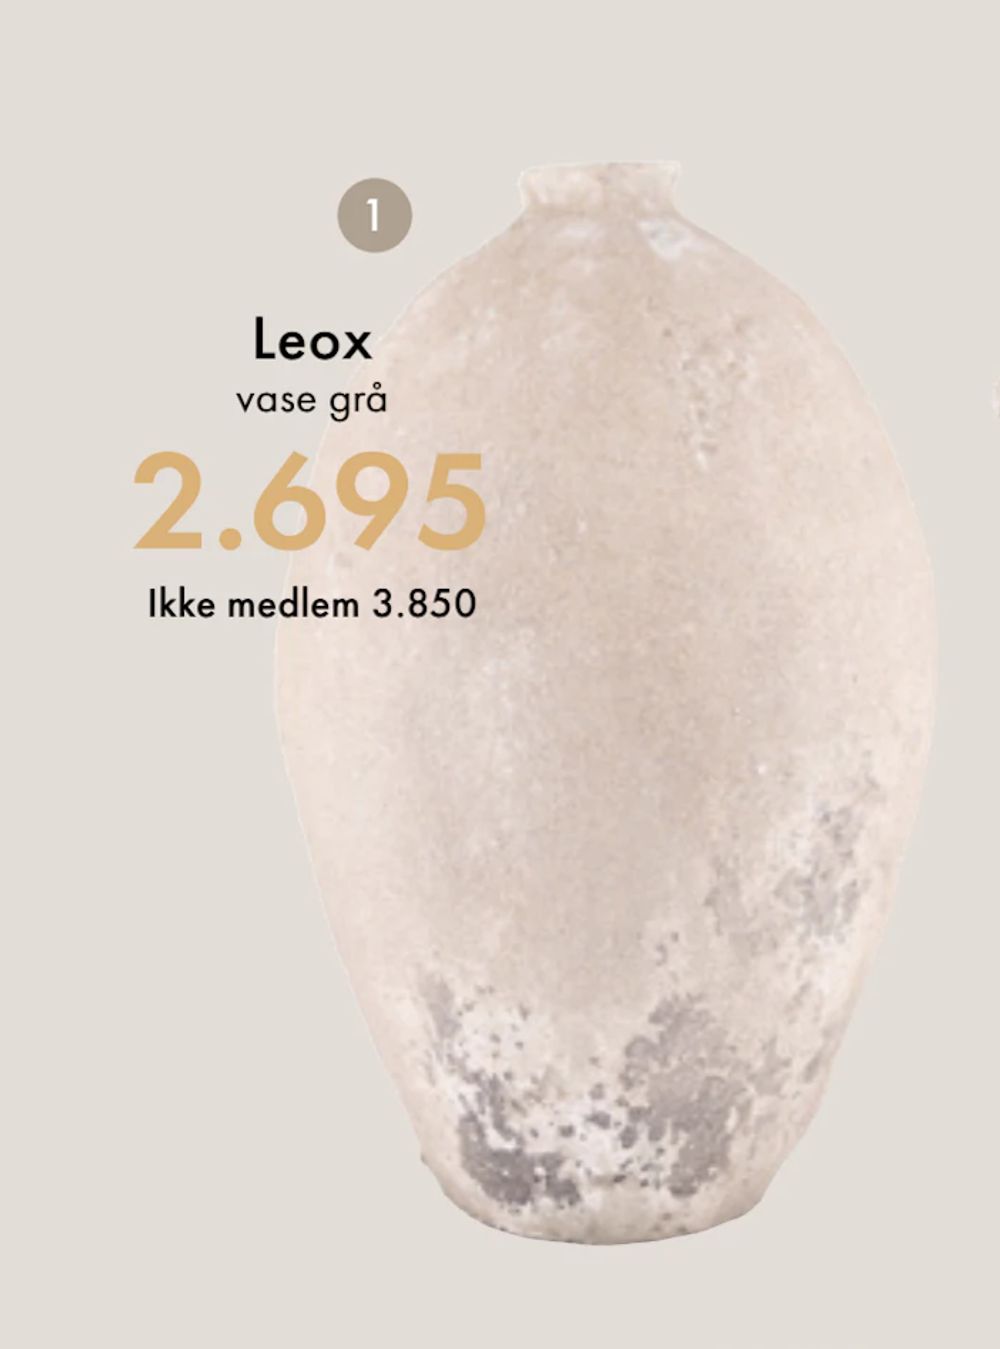 Tilbud på Leox vase fra Fagmøbler til 3 850 kr